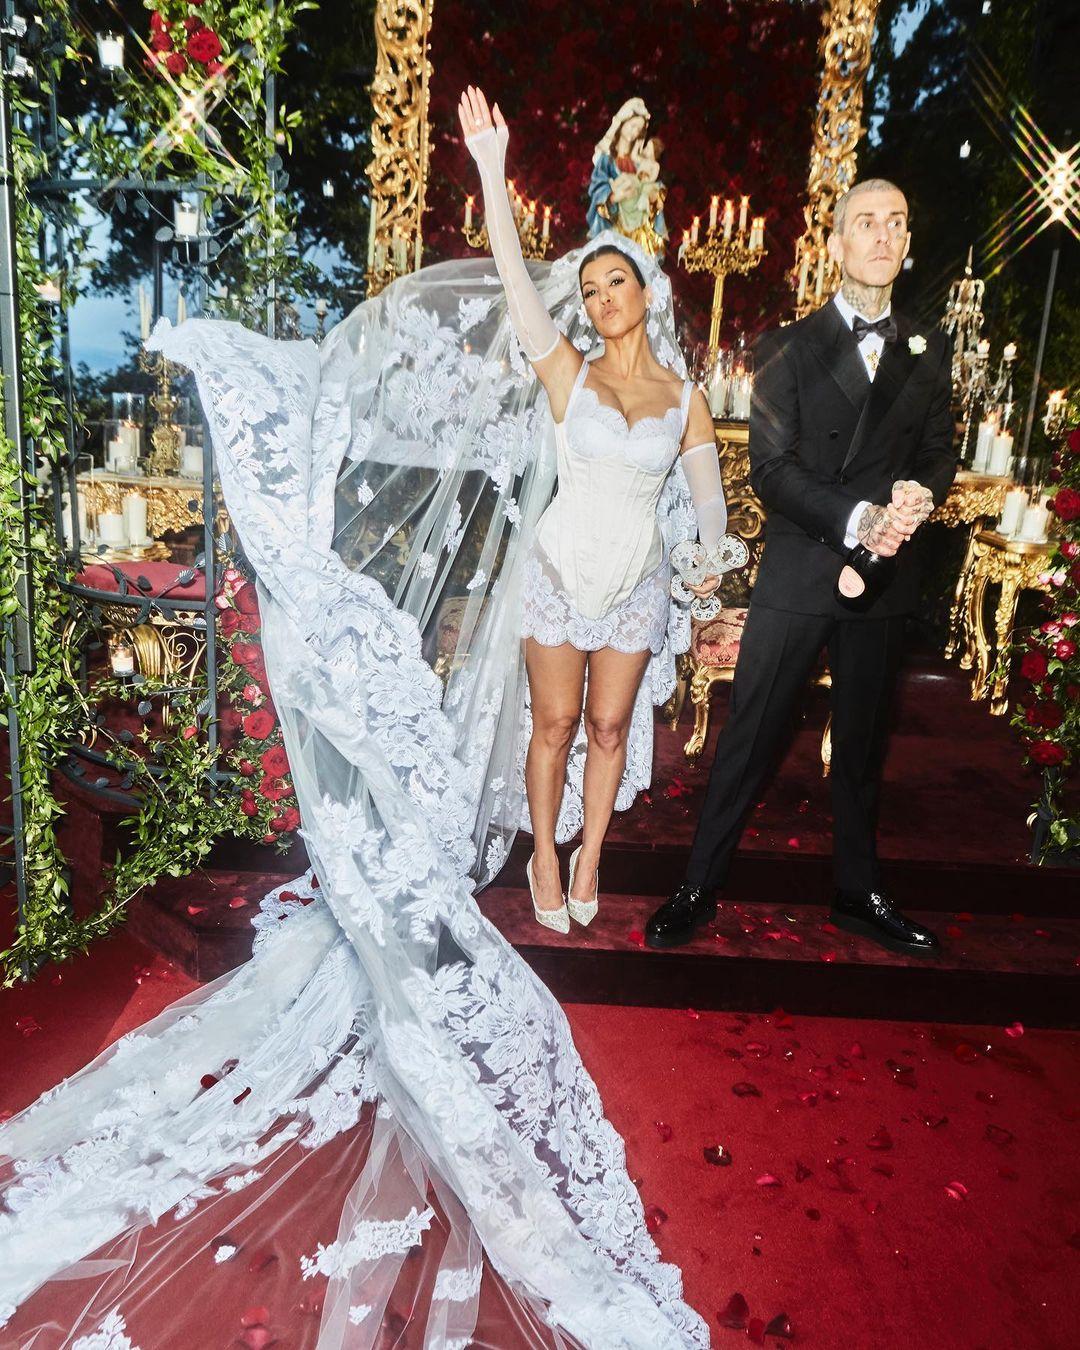 Kourtney Kardashian trolled over wedding dress